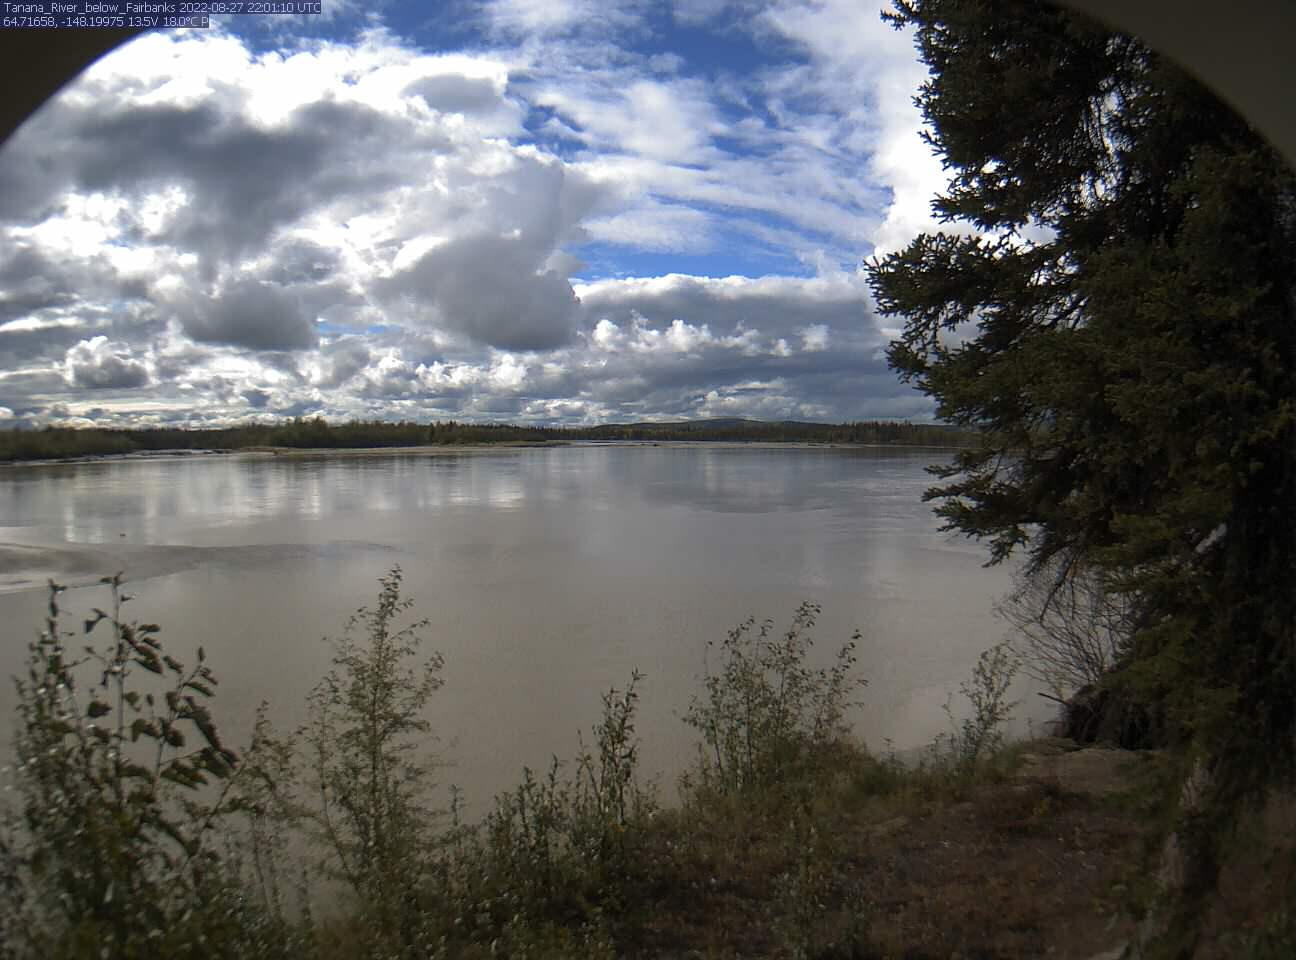 Tanana_River_below_Fairbanks_20220827220111.jpg